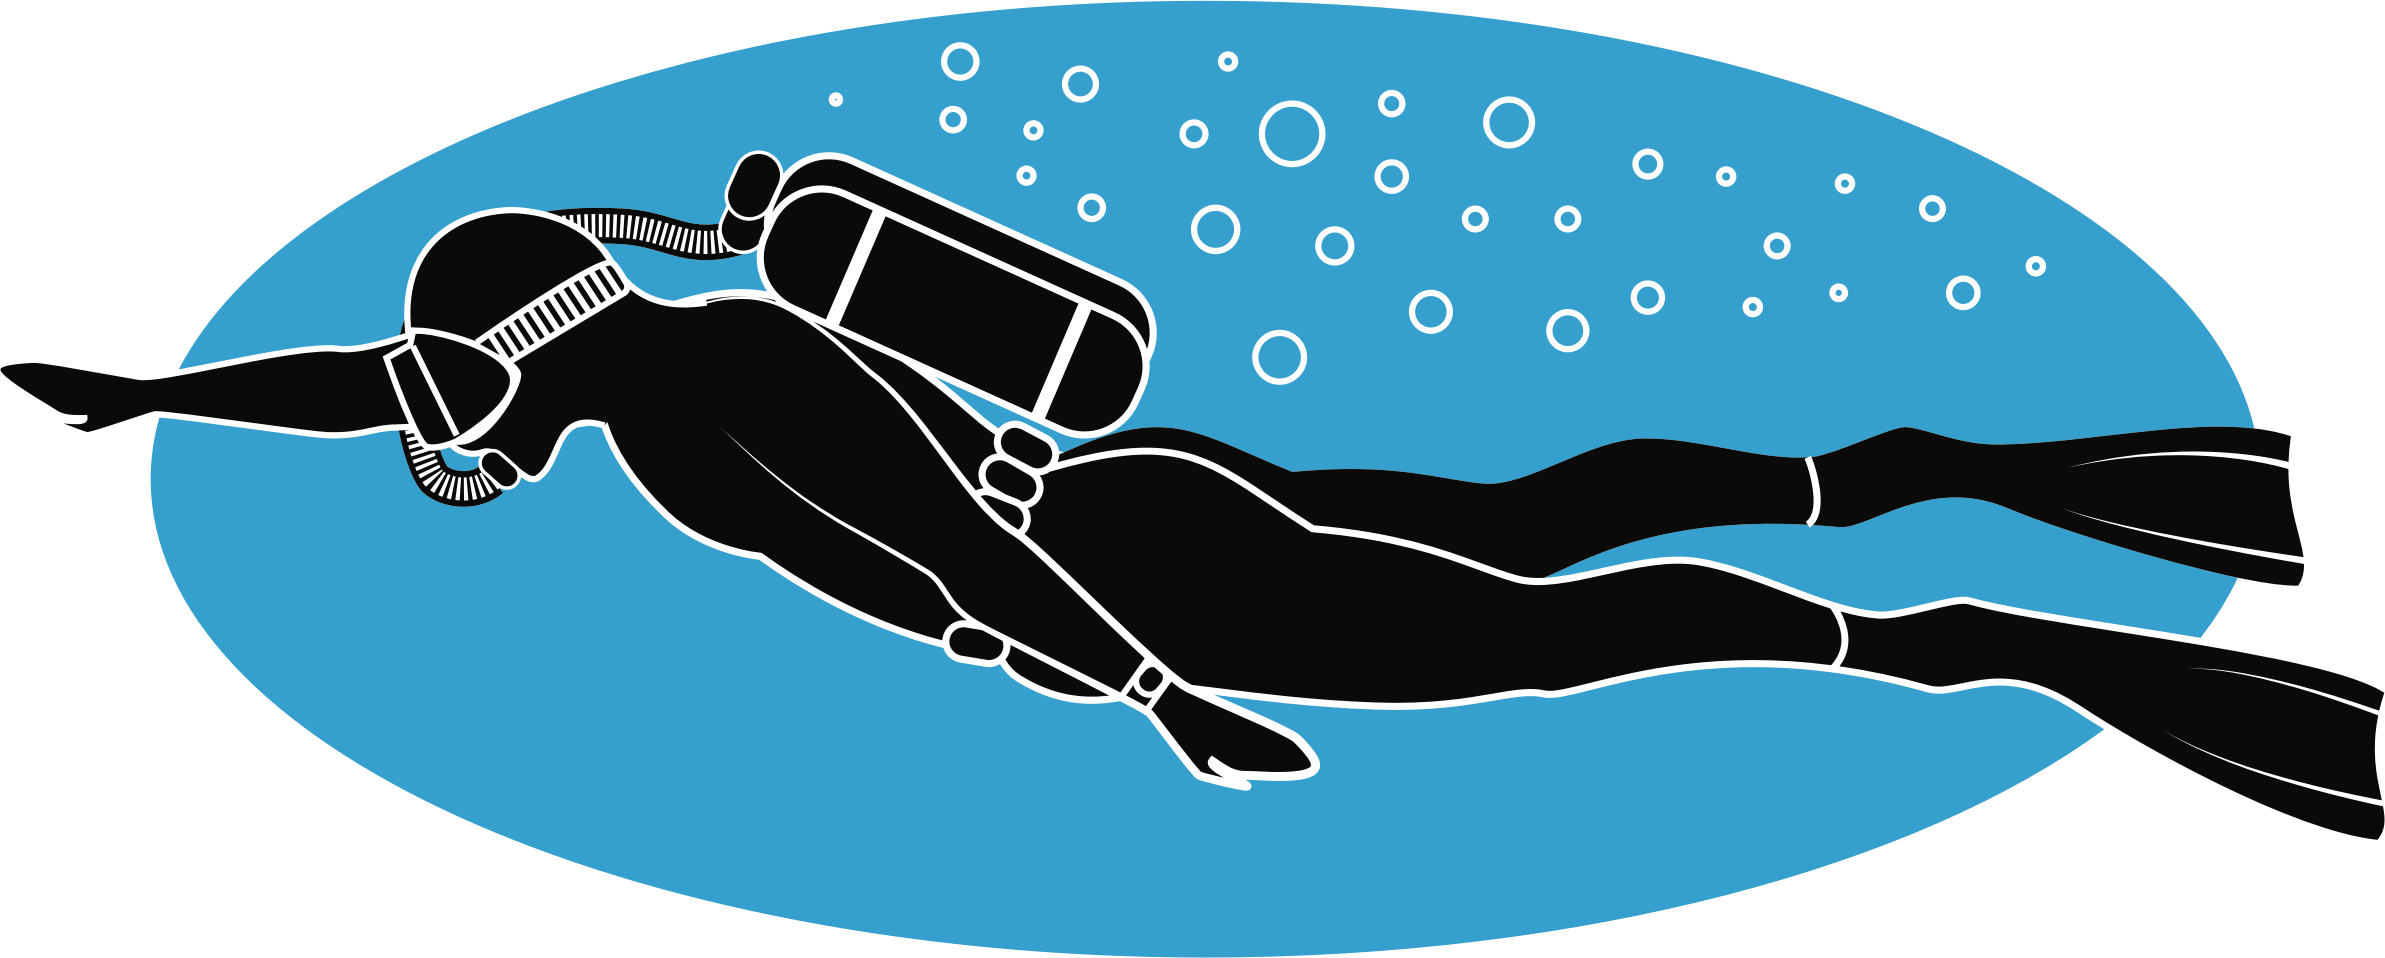 Big Image - Scuba Diving Clip Art (2385x958)